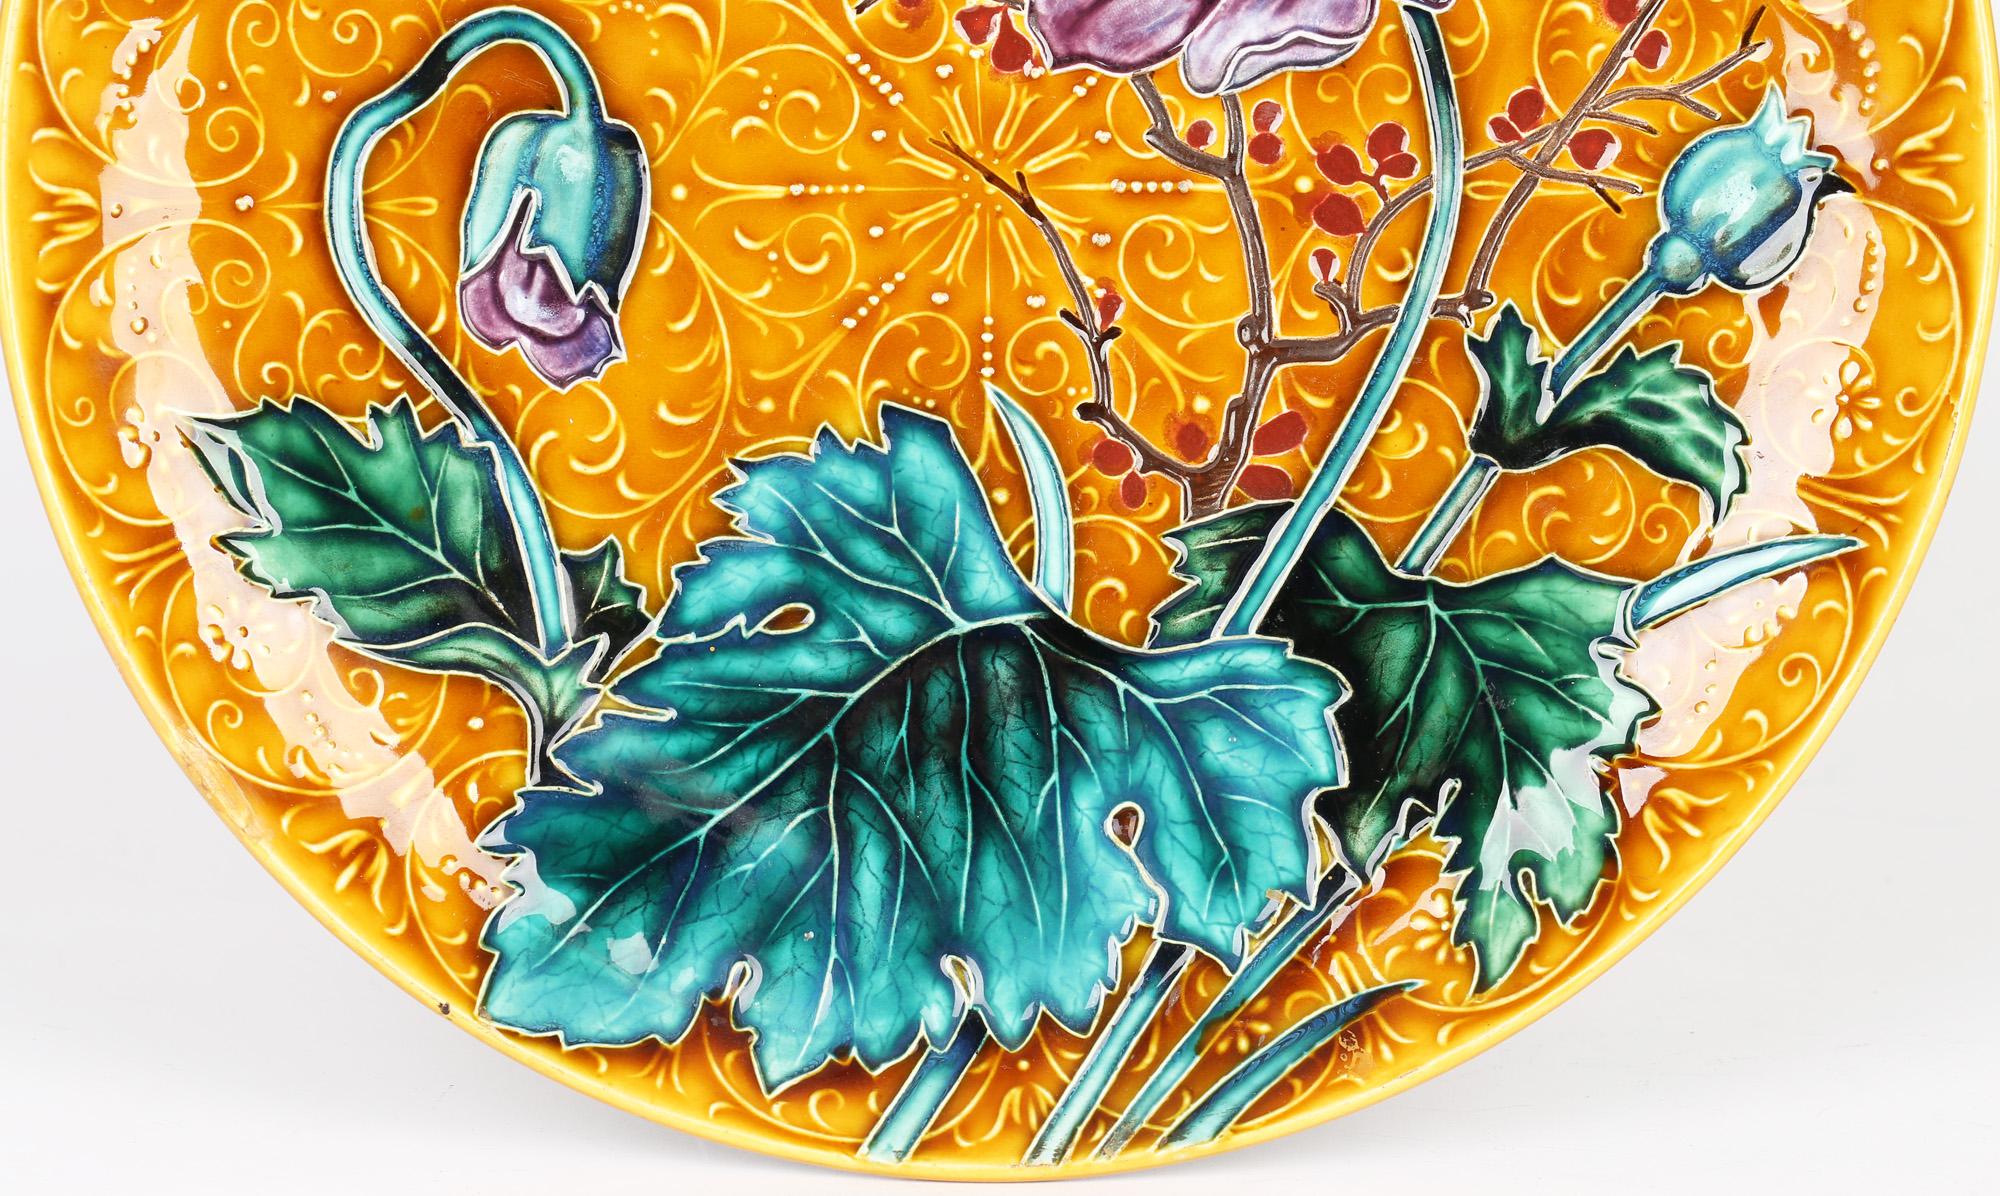 Superbe plaque murale en poterie autrichienne Art Nouveau avec des motifs floraux tubulaires datant de la fin du XIXe siècle. La plaque, lourdement empotée, est joliment décorée d'un arbuste fleuri à trois tiges, deux avec des bourgeons et une avec